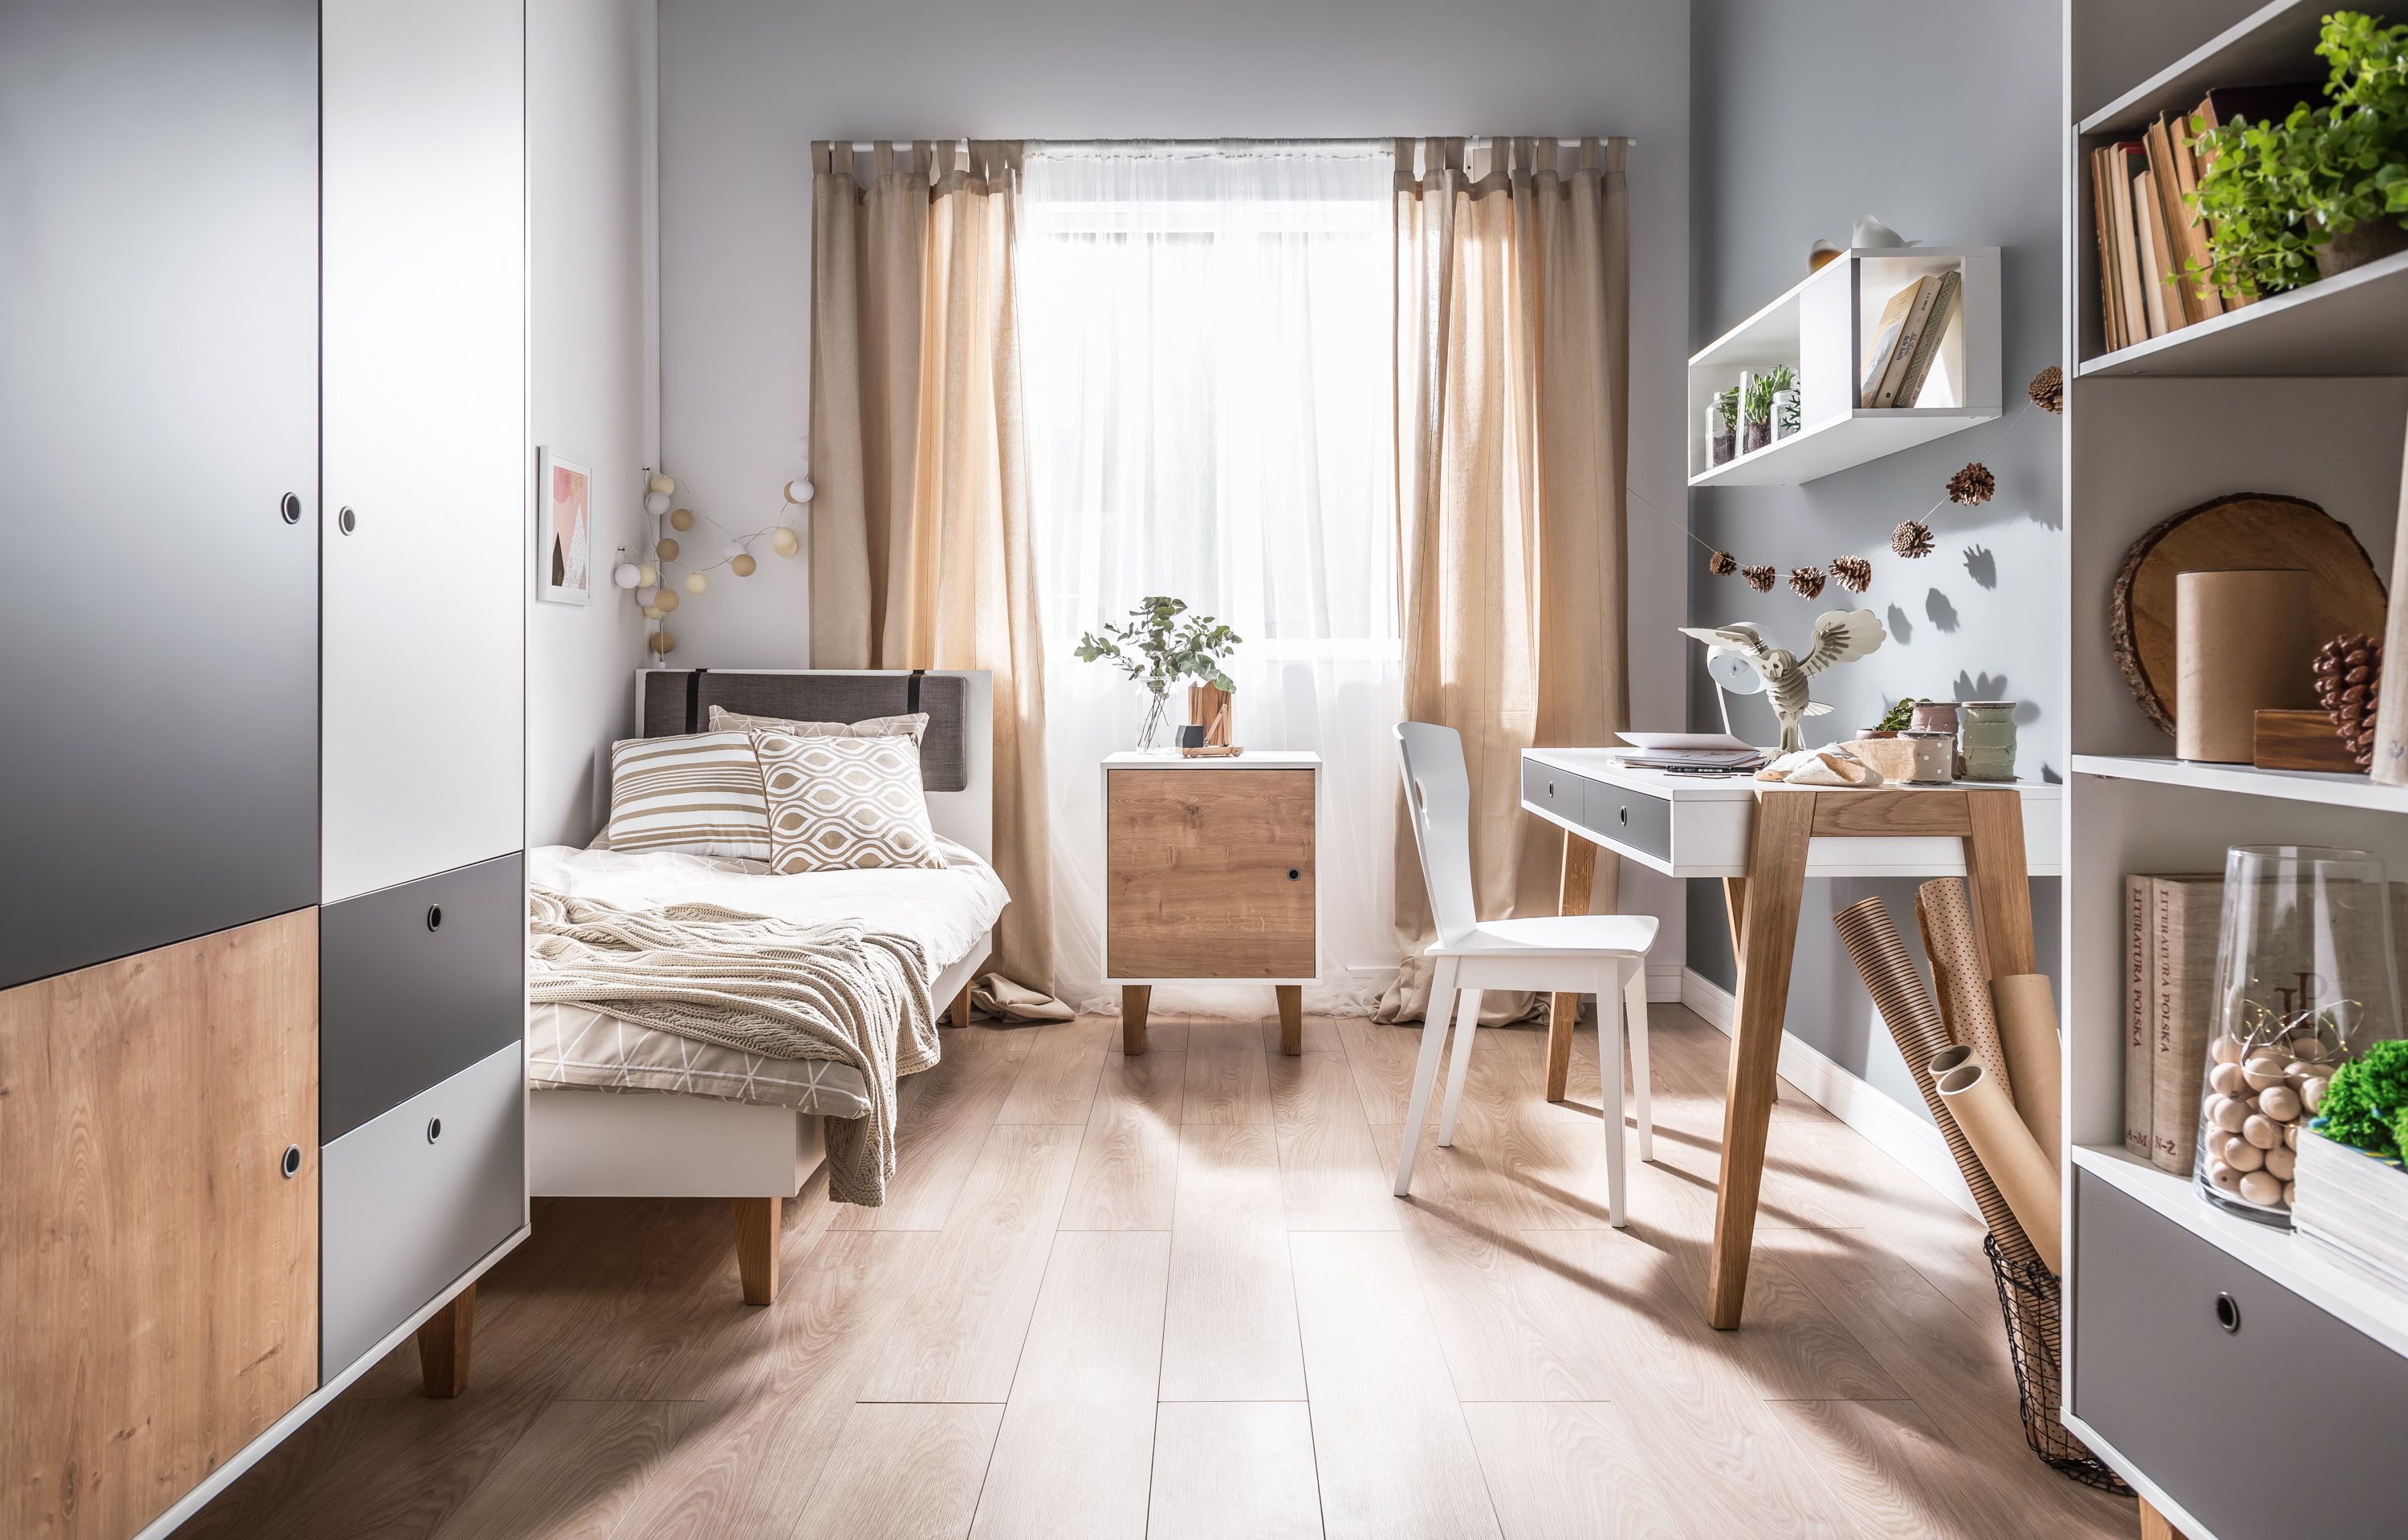 El dormitorio de un apartamento pequeño, ¿una limitación o una rápida oportunidad de diseño?